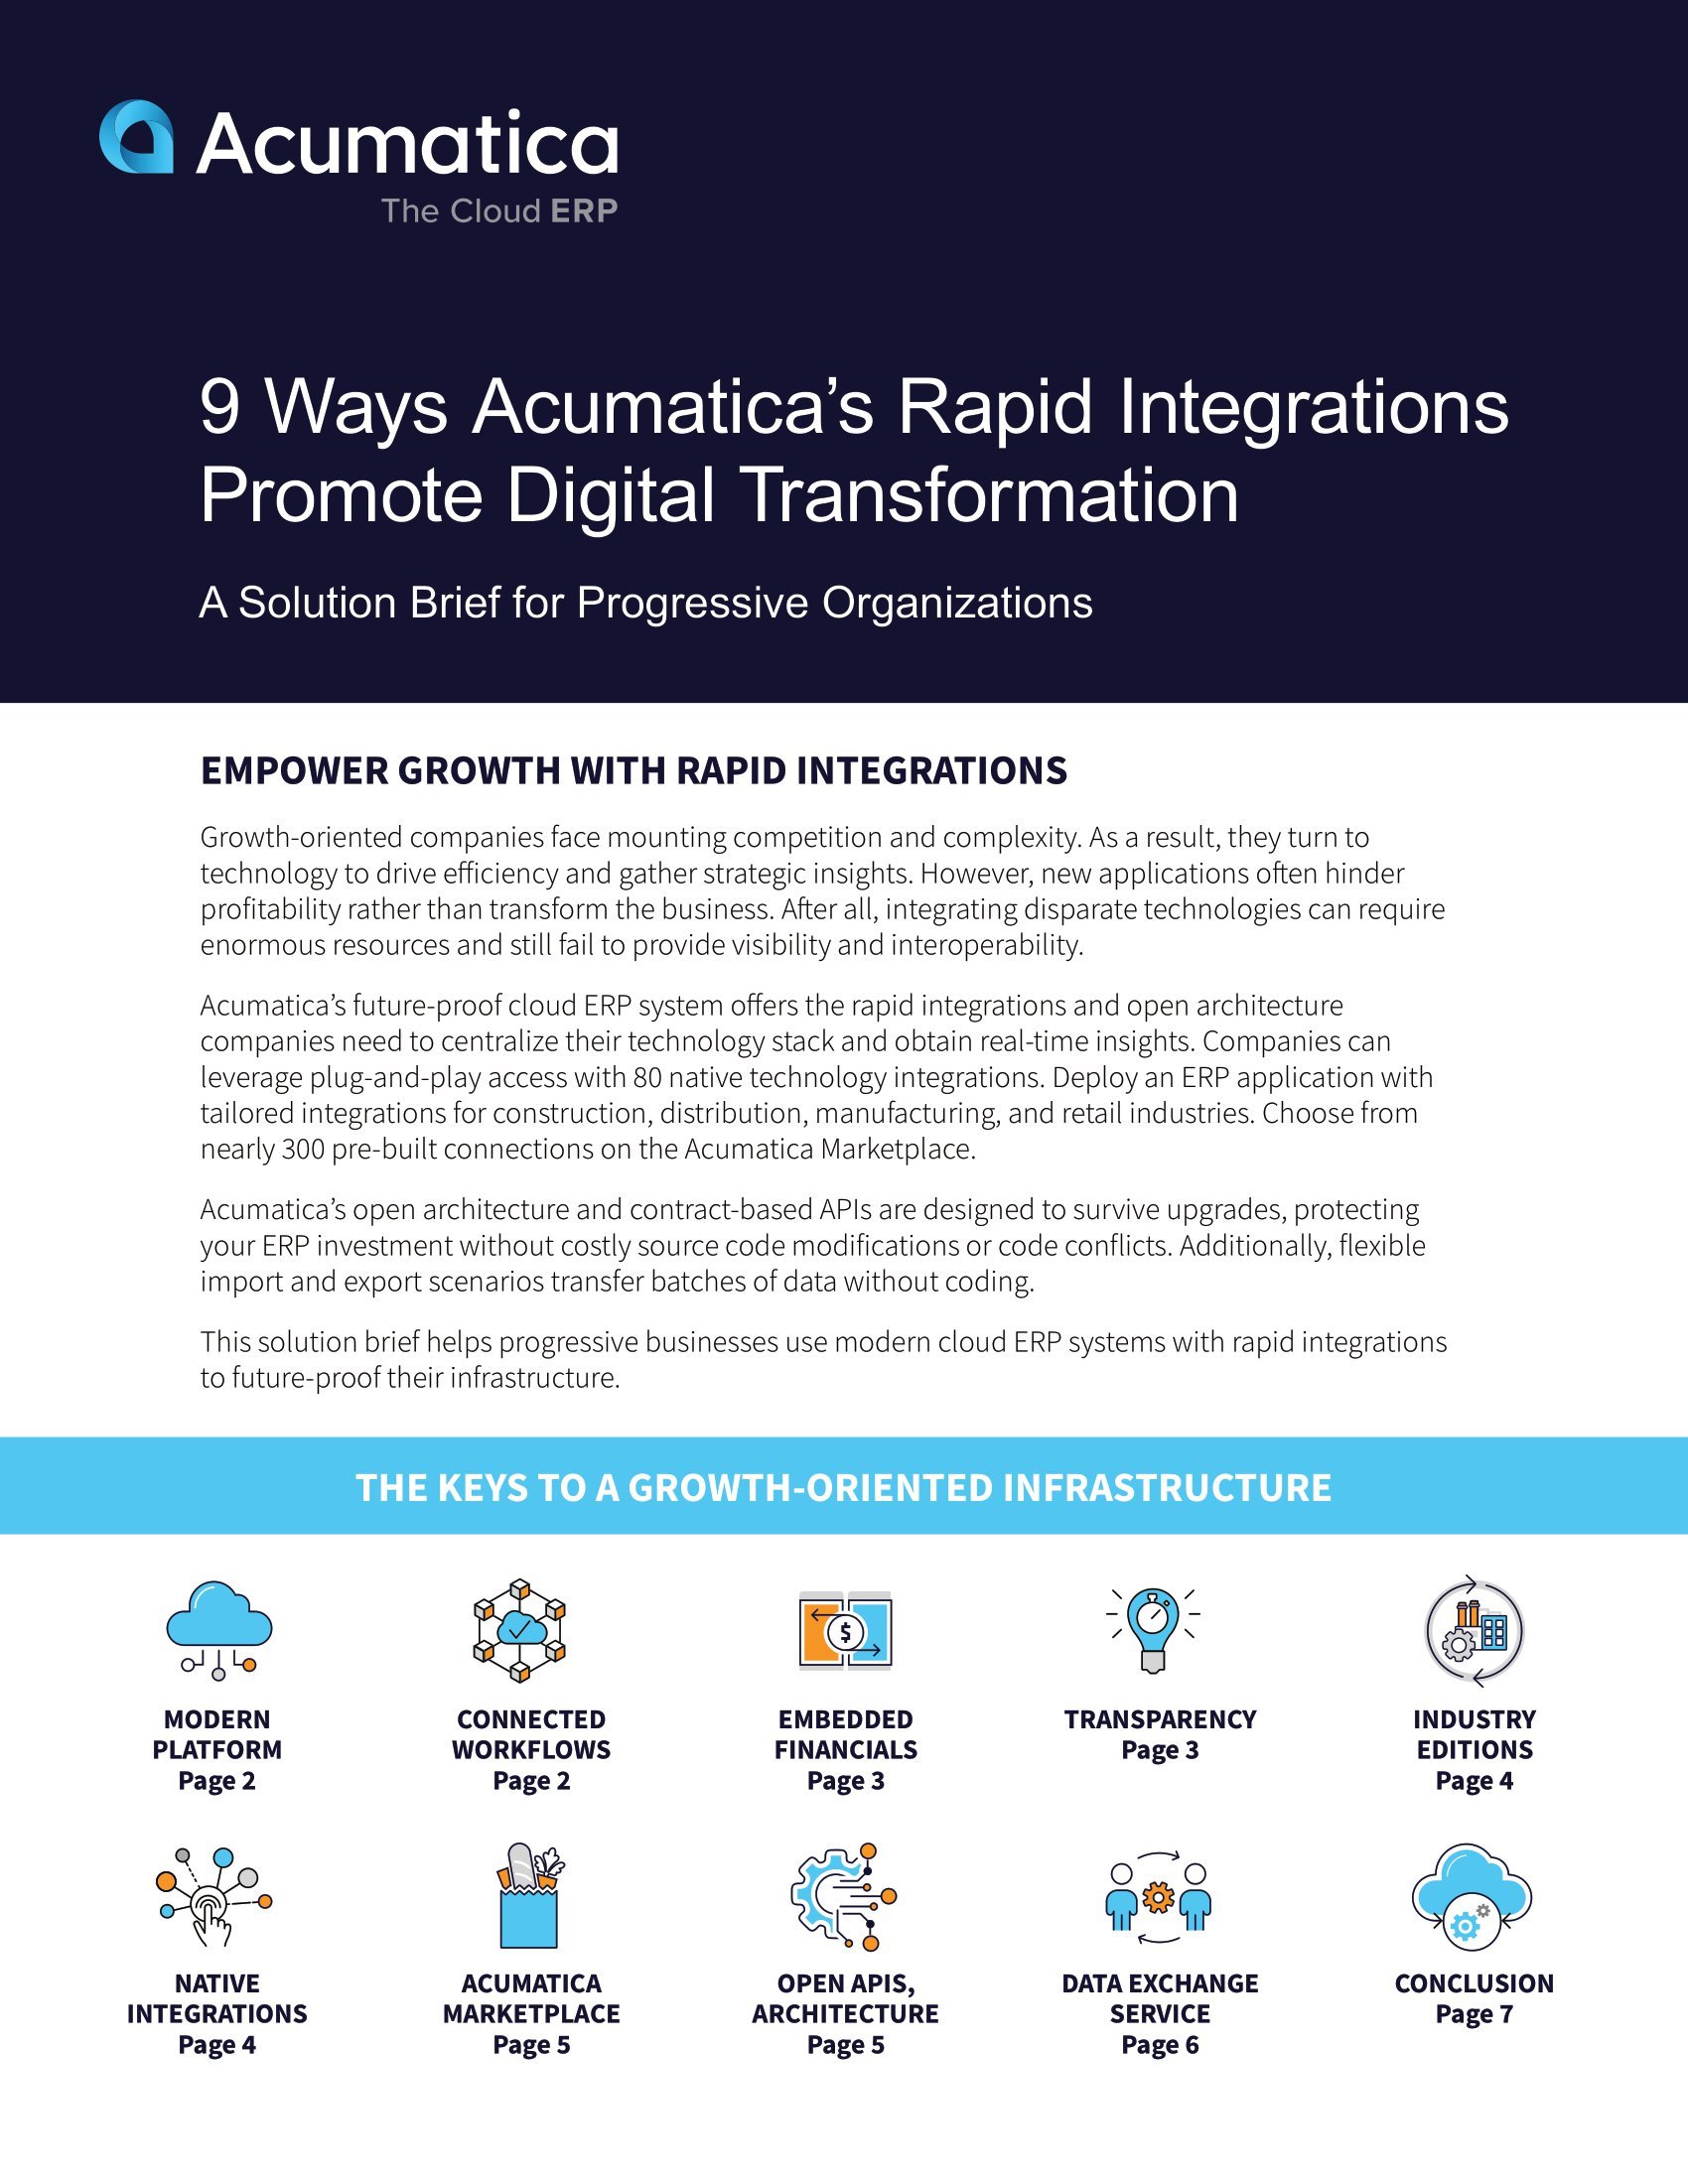 La tecnología centralizada mediante integraciones rápidas impulsa el éxito de la transformación digital 